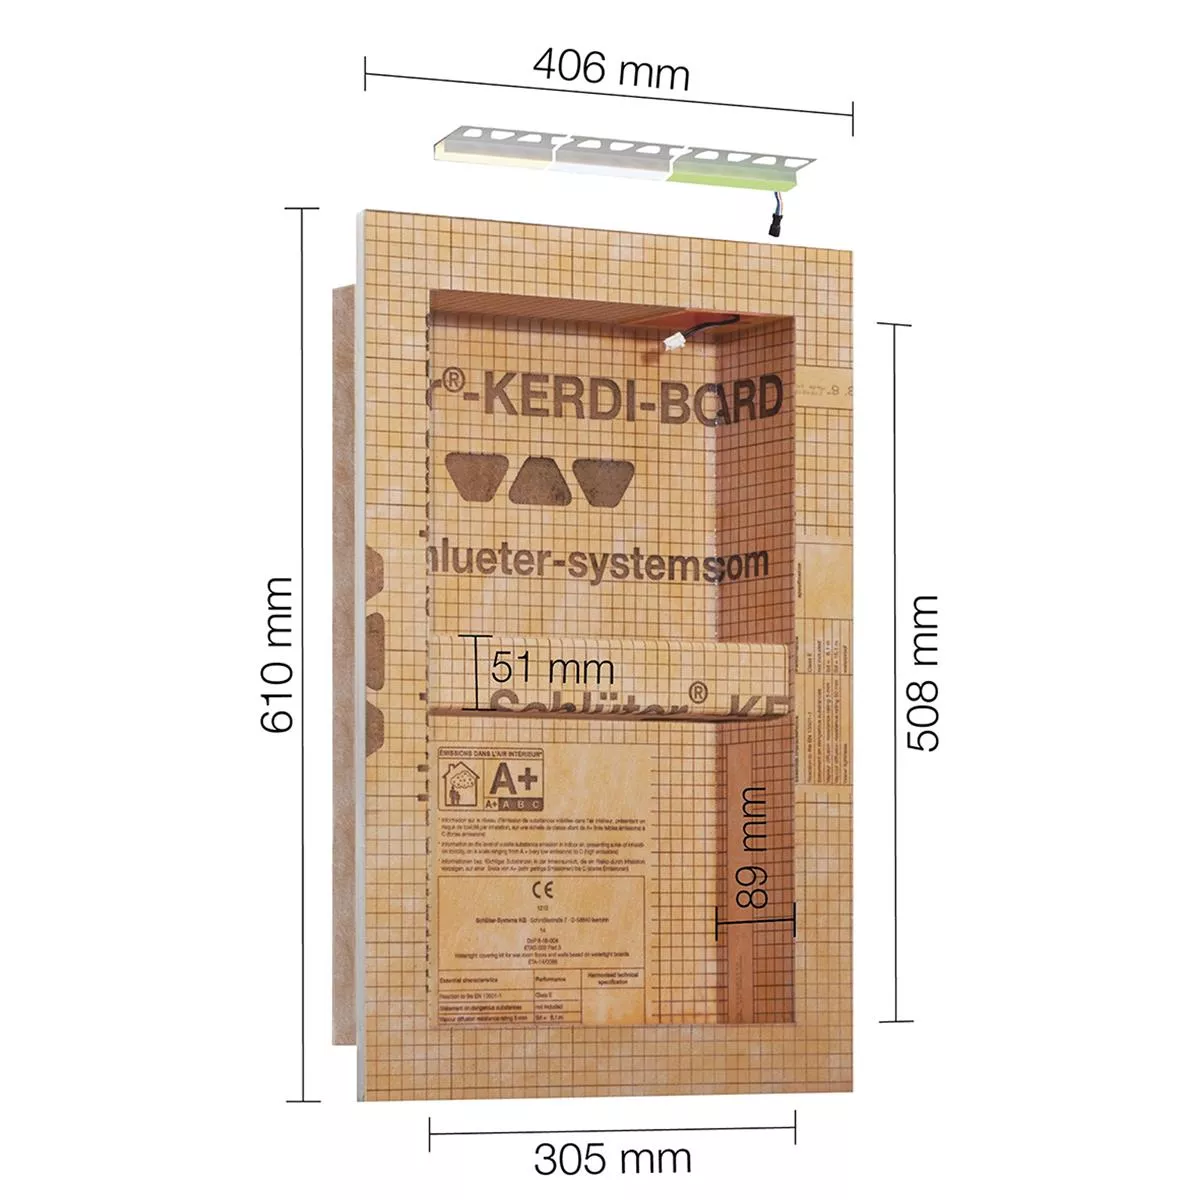 Schlüter Kerdi Board NLT niche szett LED világítás meleg fehér 30,5x50,8x0,89 cm